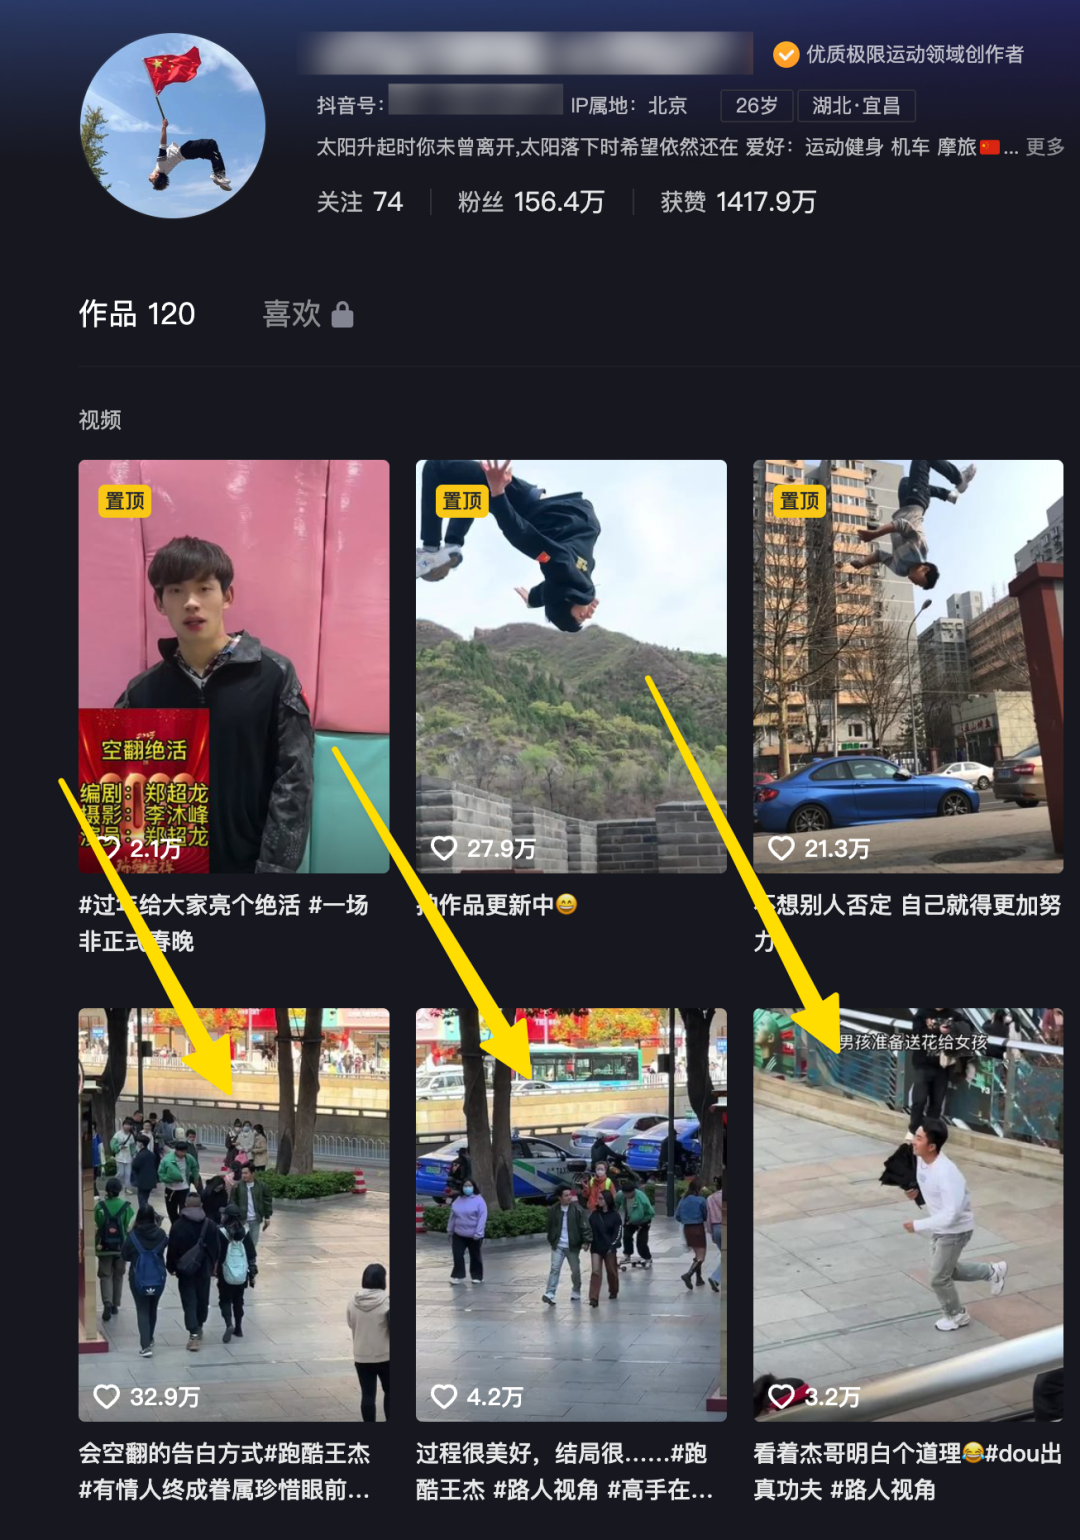 算法正在谋杀新闻，十亿中国网友却为此狂欢。